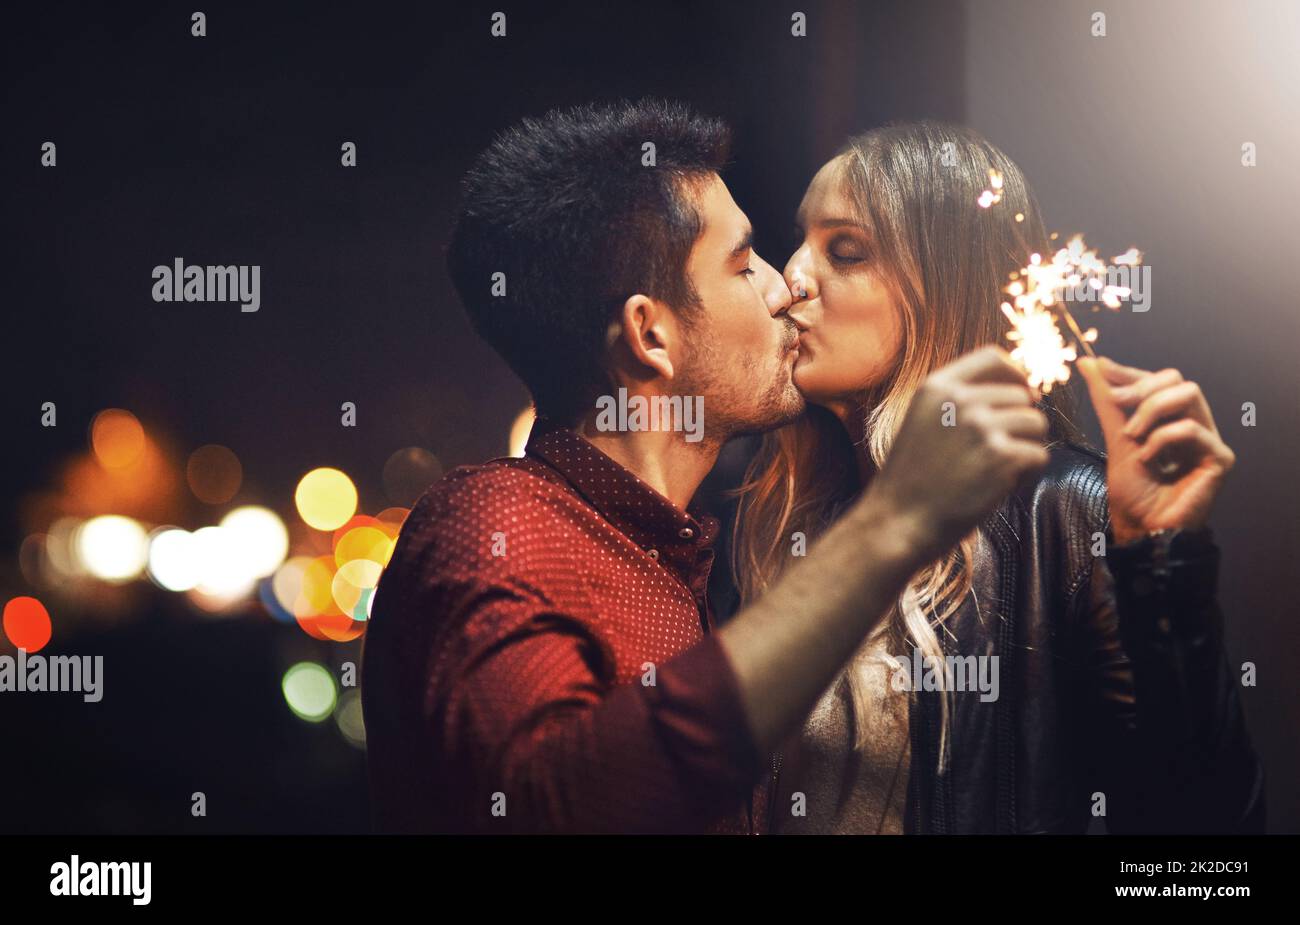 Le scintille volano quando baciamo. Scatto di una giovane coppia felice che festeggia con i luccicanti all'aperto di notte. Foto Stock